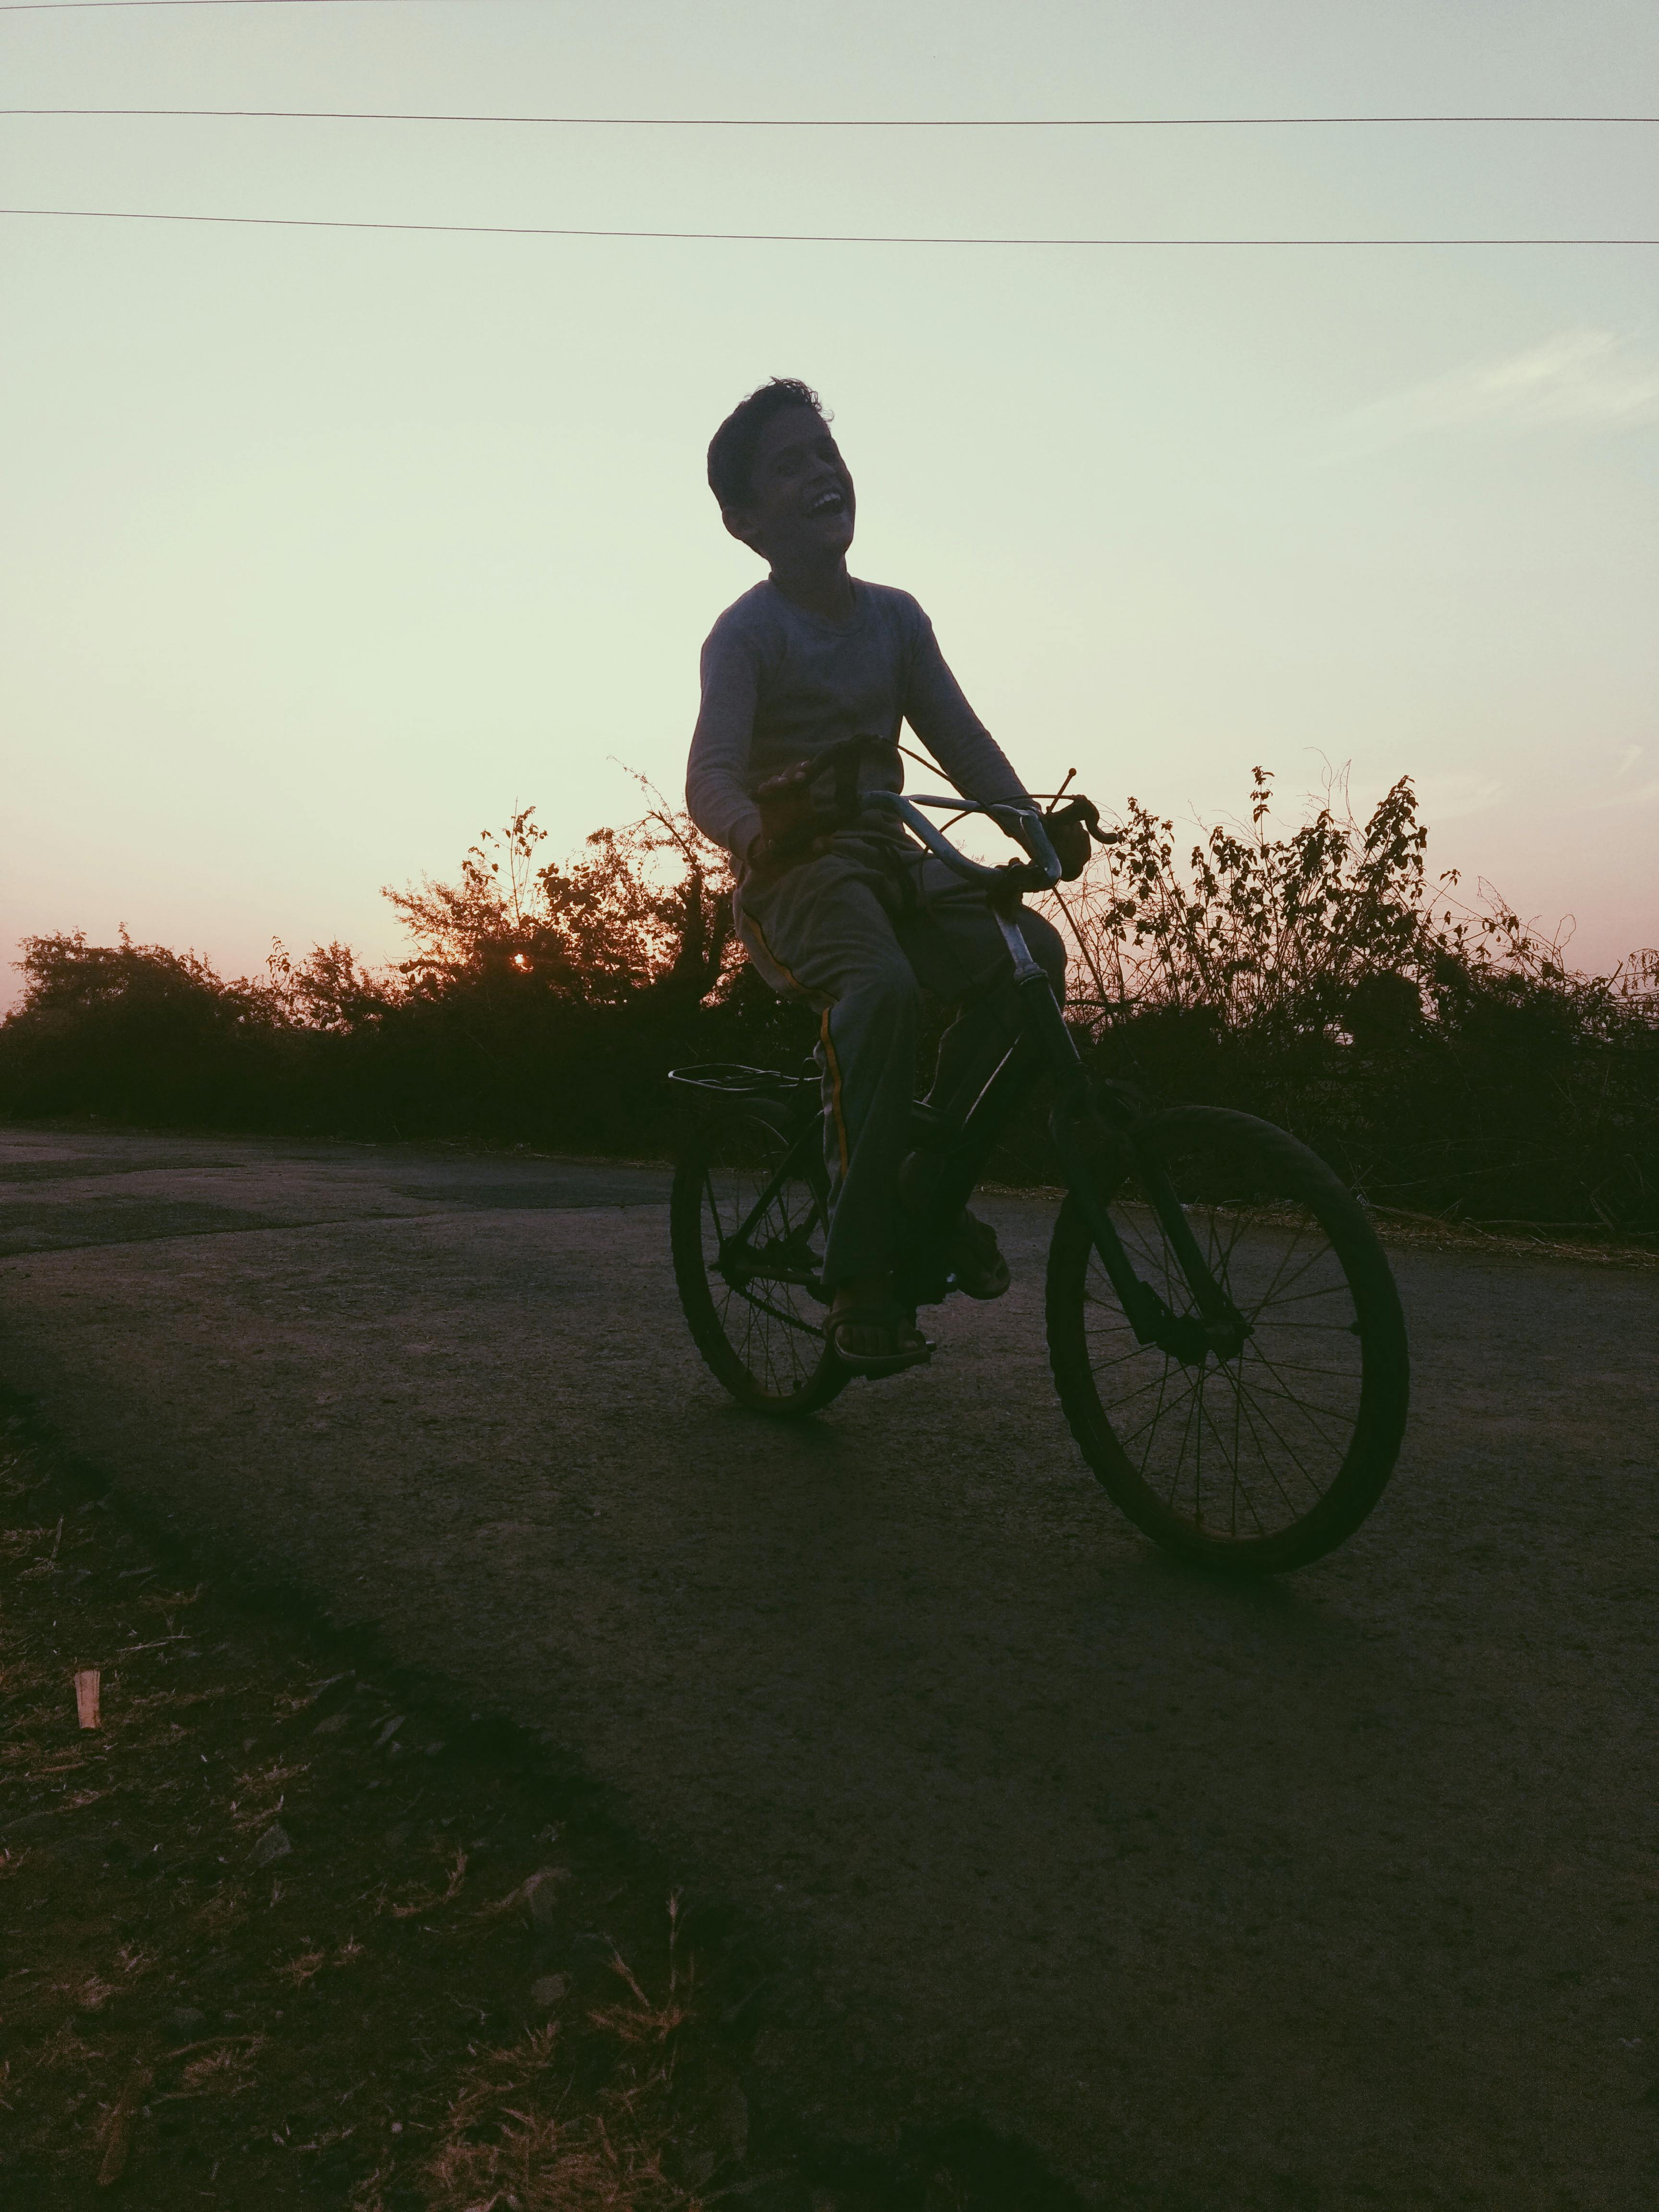 Un niño montando en bici. | Fuente: Pexels